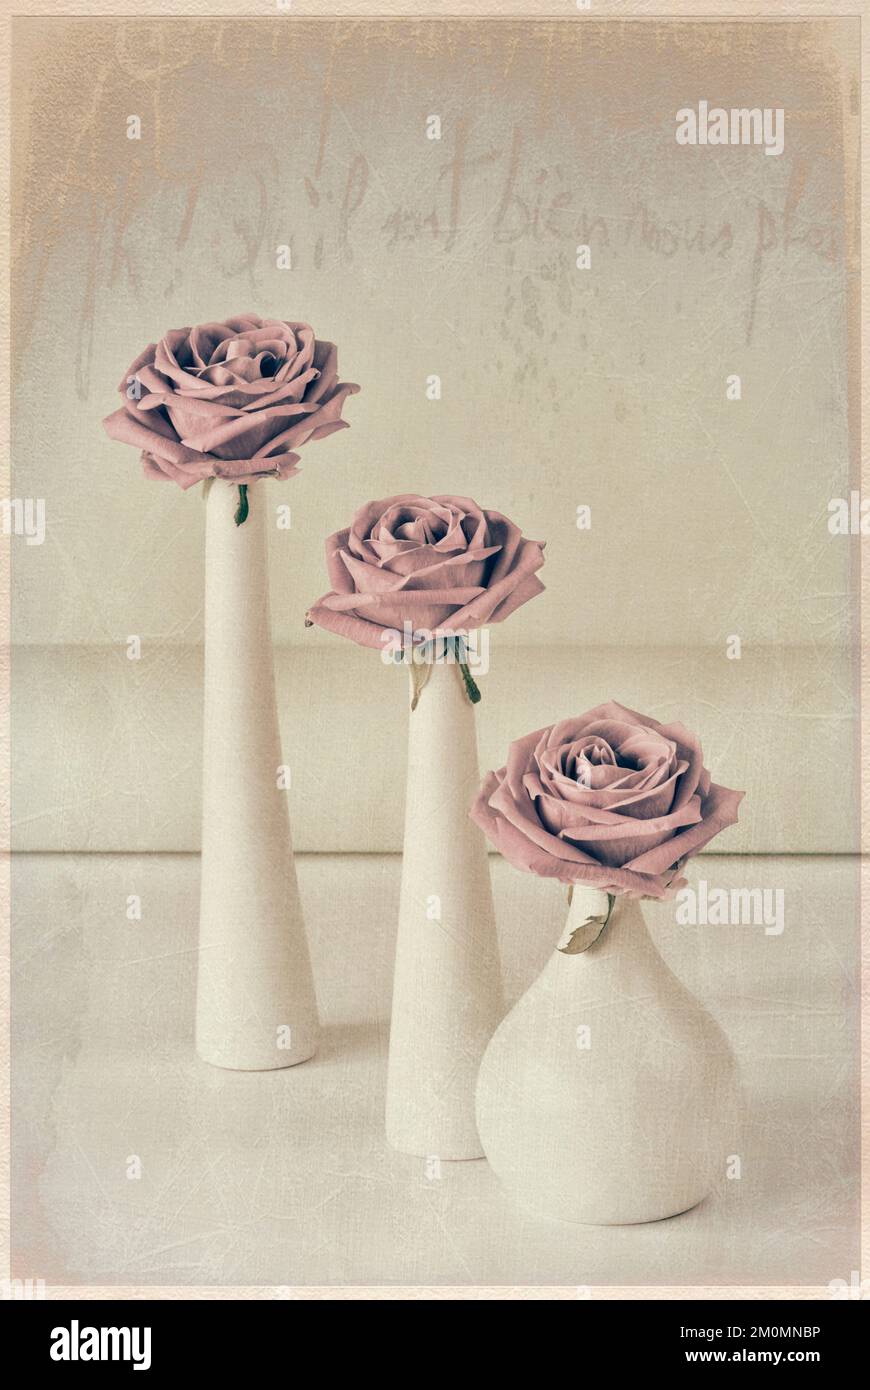 Trois roses rose pâle dans trois vases blancs avec revêtement de texture Banque D'Images